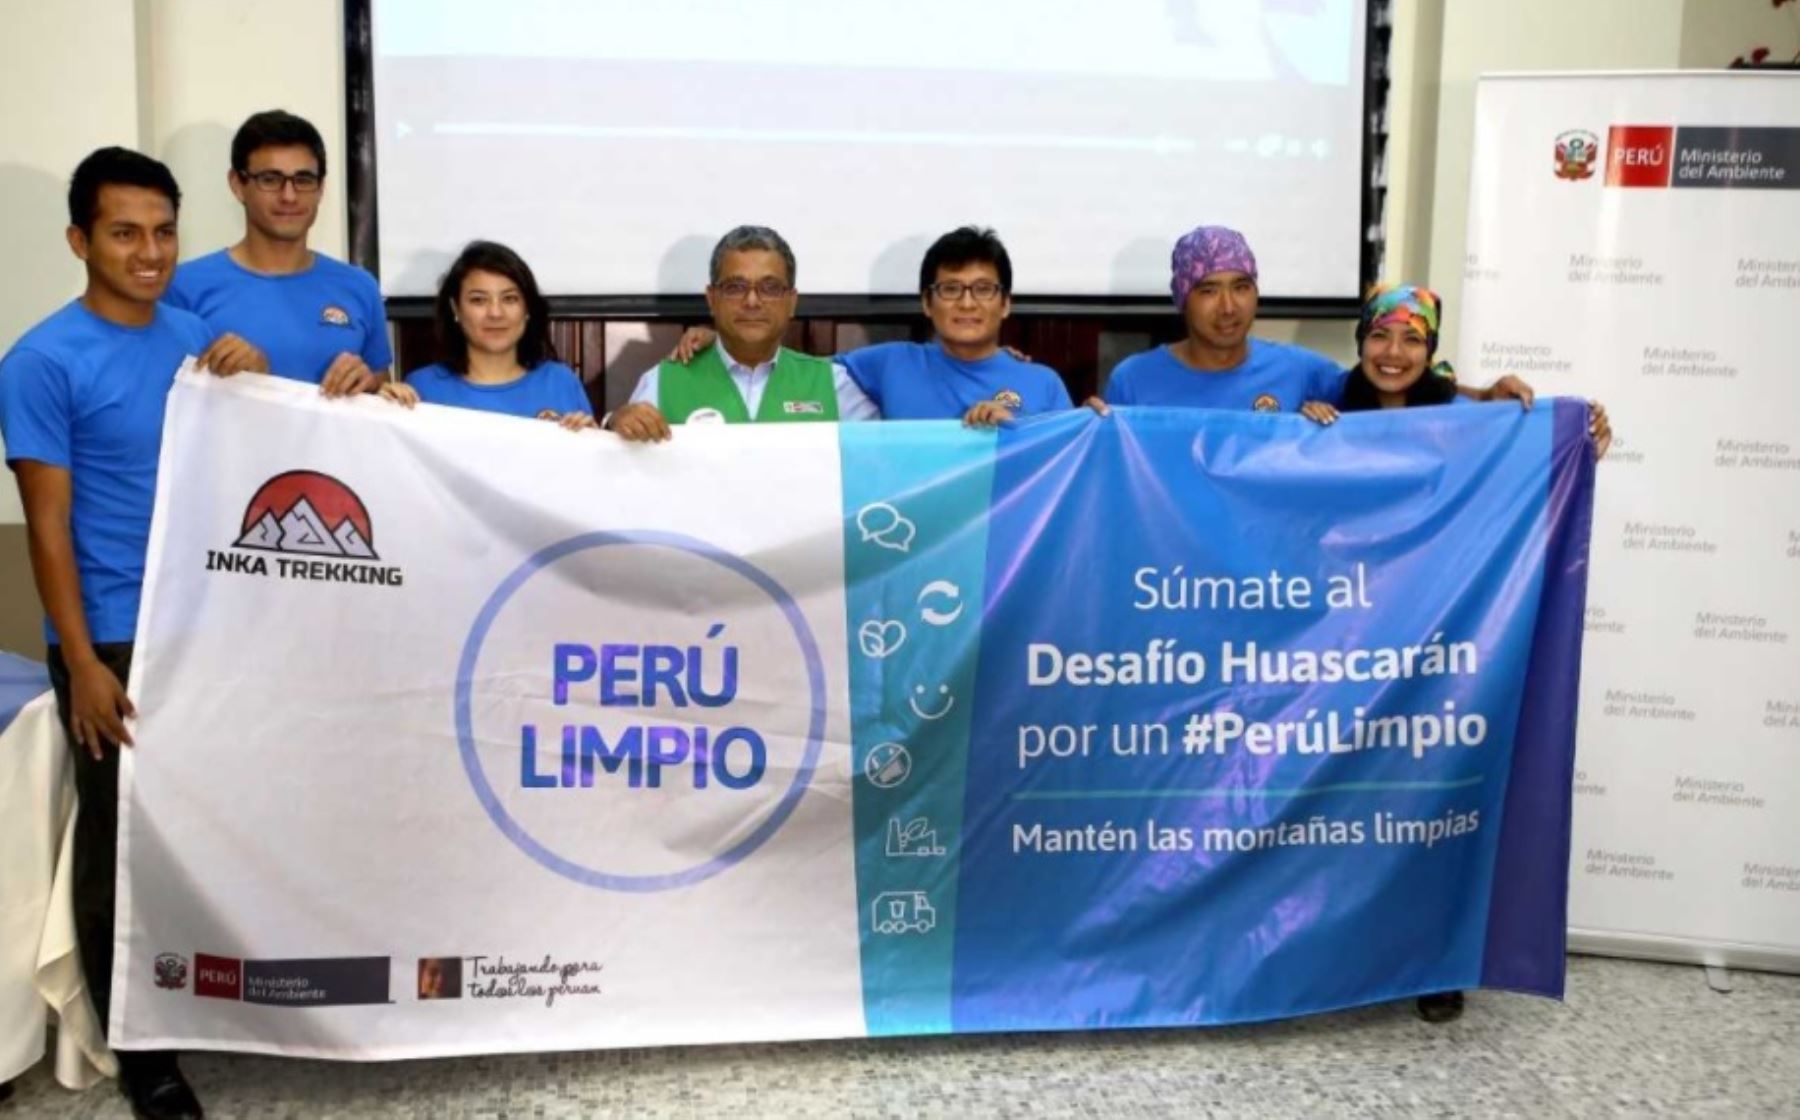 El Ministerio del Ambiente y el Club Inka Trekking unieron esfuerzos para realizar la iniciativa “Desafío Huascarán por un Perú Limpio”, que tiene como finalidad promover en los deportistas y la ciudadanía en general, las buenas prácticas para mantener las montañas y los ecosistemas limpios.